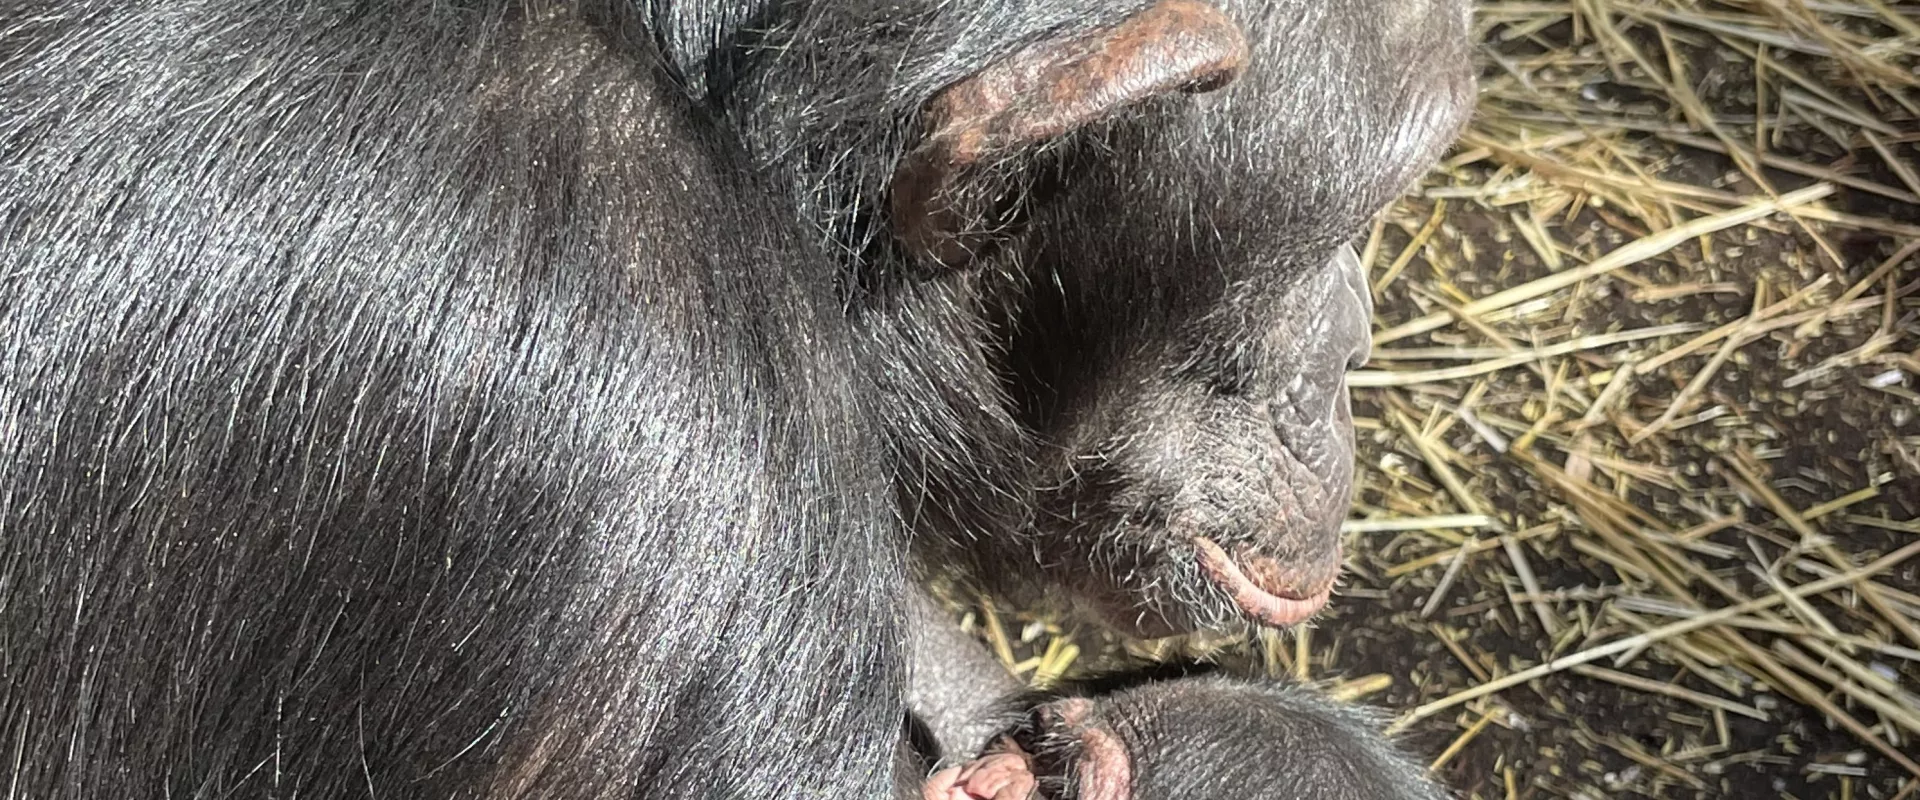 Chimpanzee Makes His Debut at the North Carolina Zoo